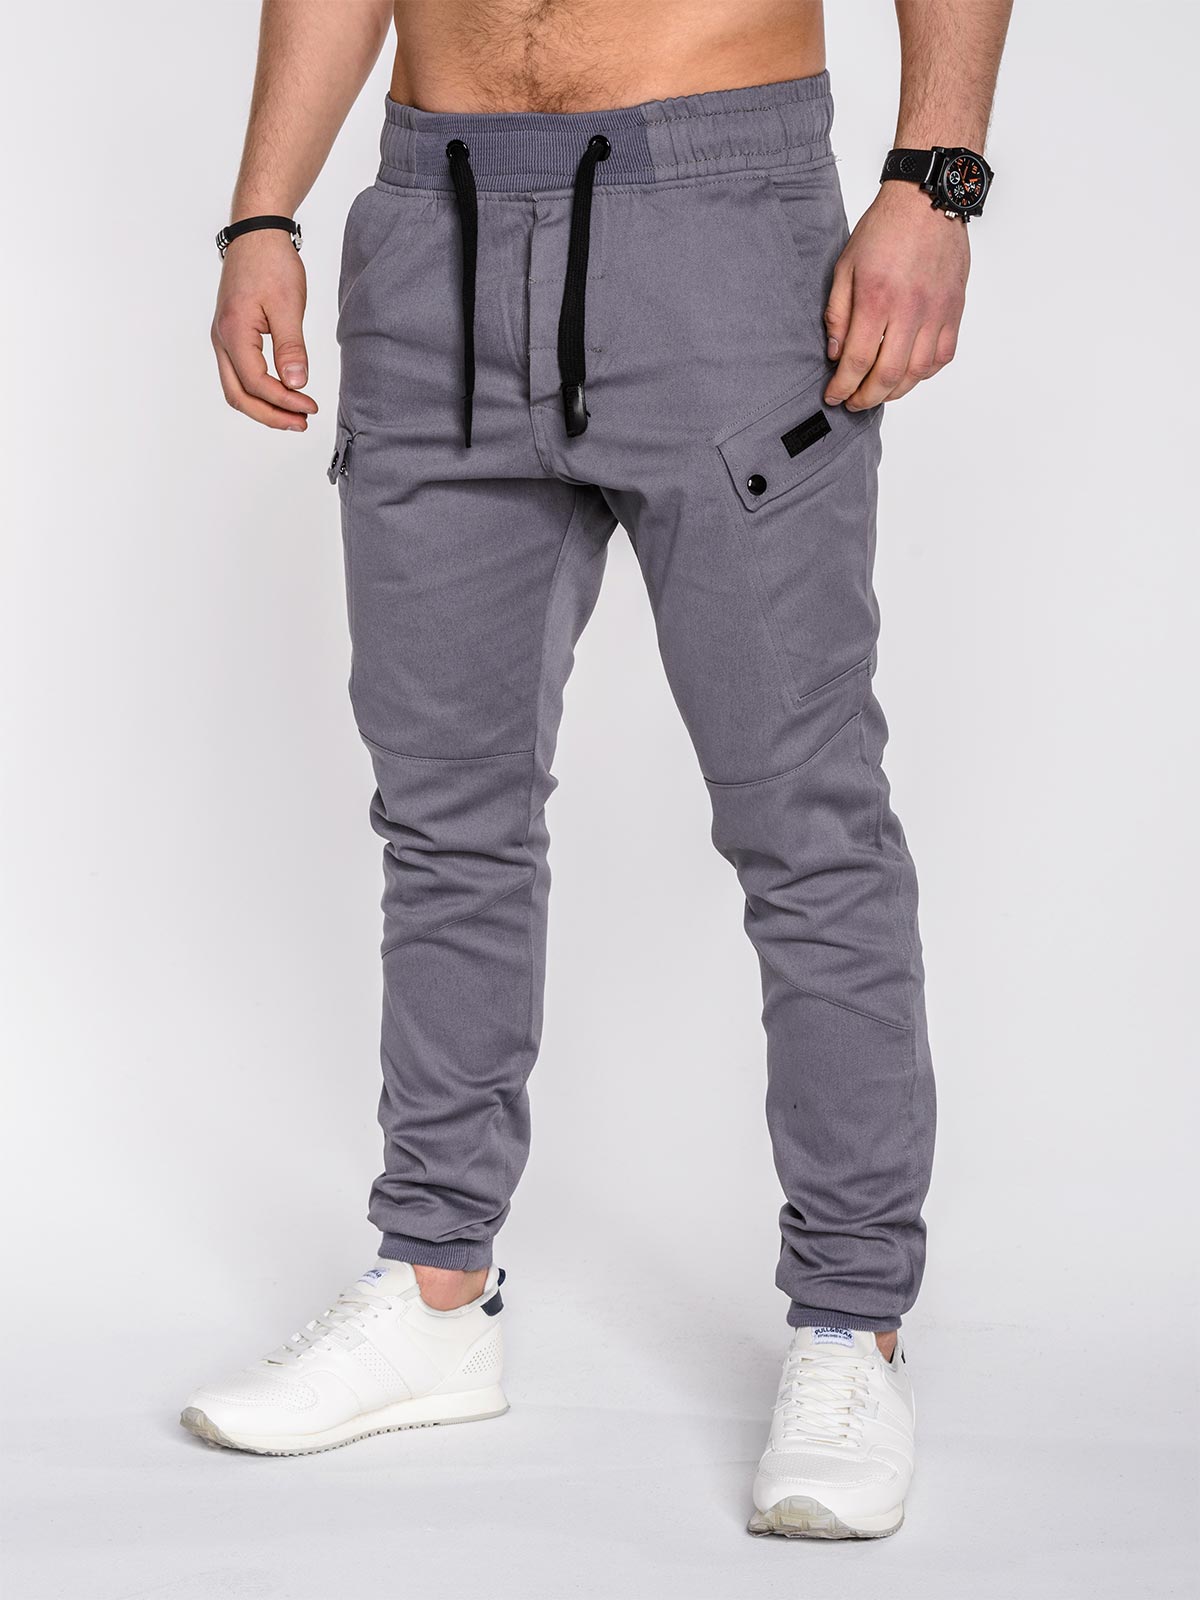 Men's pants joggers P474 - grey | MODONE wholesale - Clothing For Men